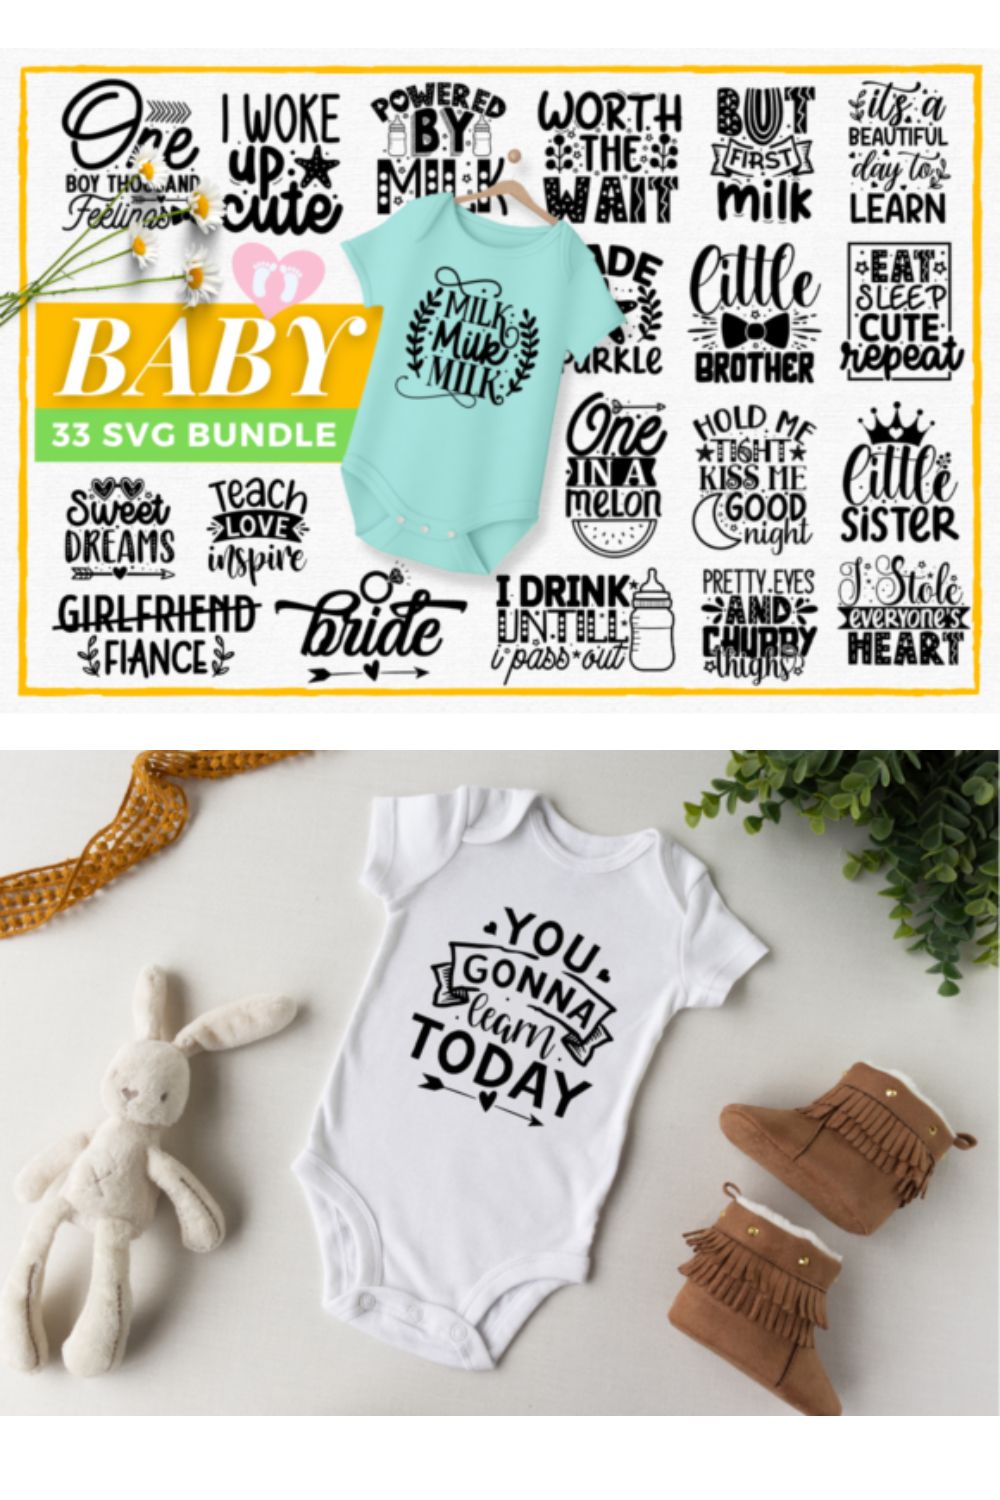 Baby SVG Bundle Design pinterest image.